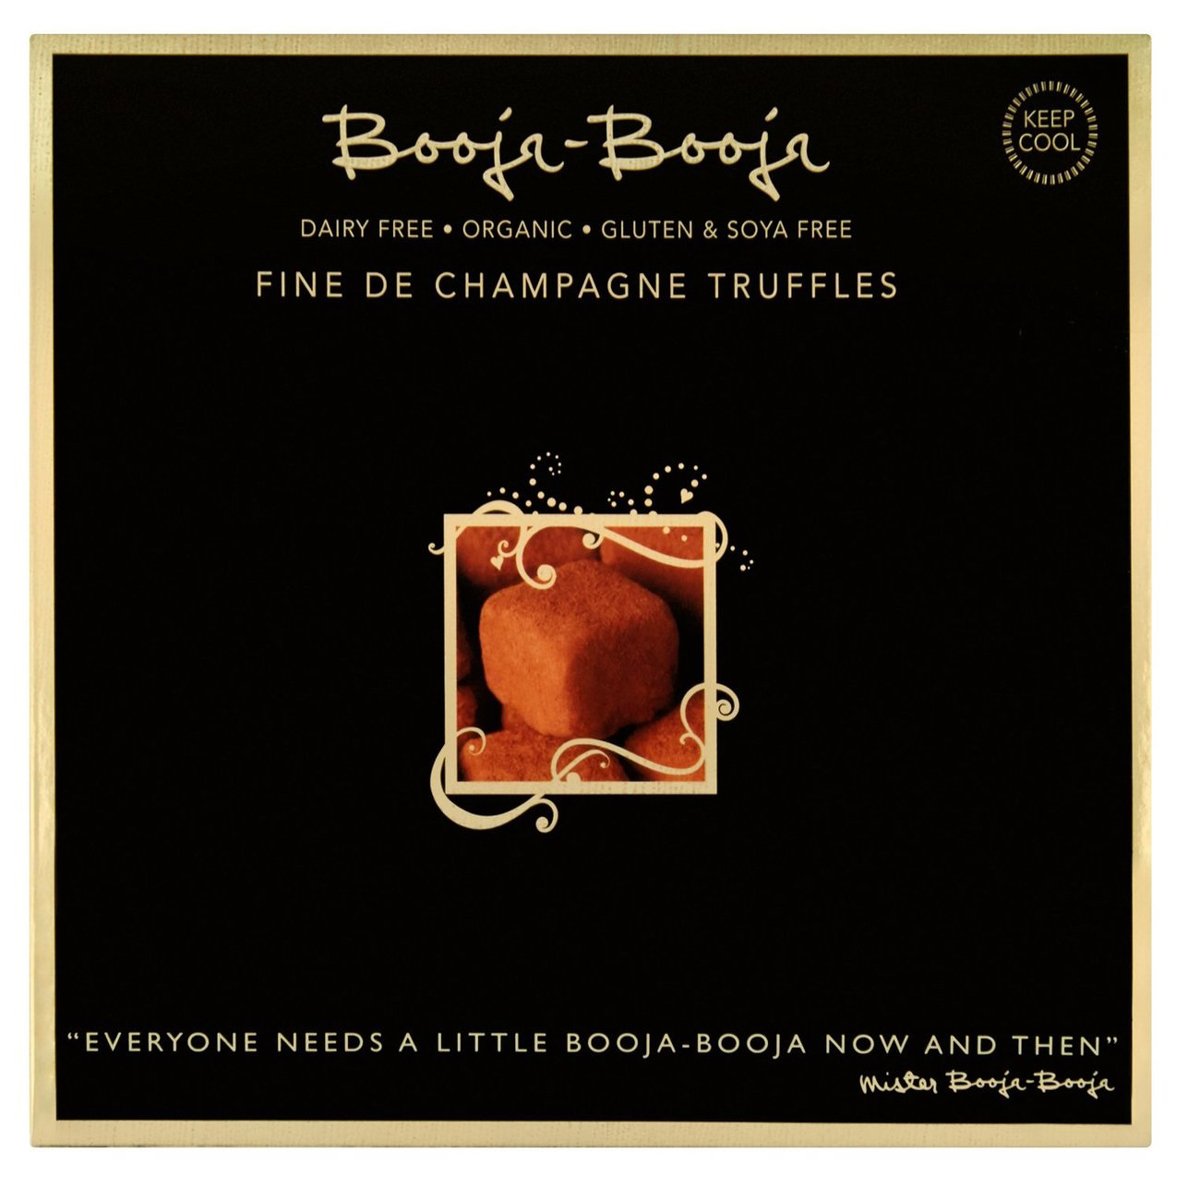 Booja-Booja Dairy Free Fine de Champagne Chocolate Truffles 138g